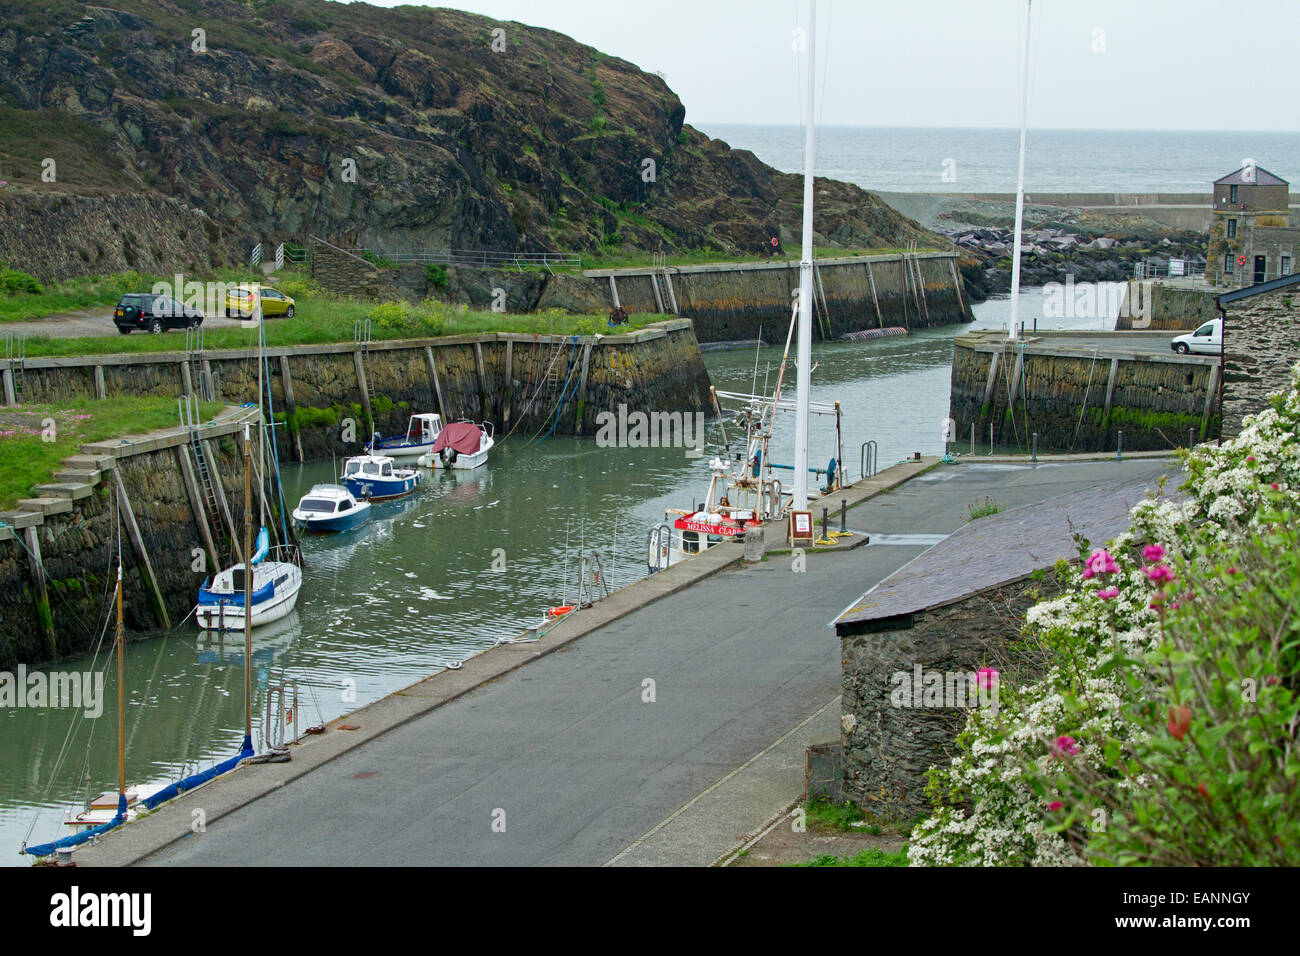 Kleinen und geschützten historischen Hafen von Porth Amlwch mit bunten Wildblumen auf grasbewachsenen Hang & Boote auf ruhigem Wasser Stockfoto